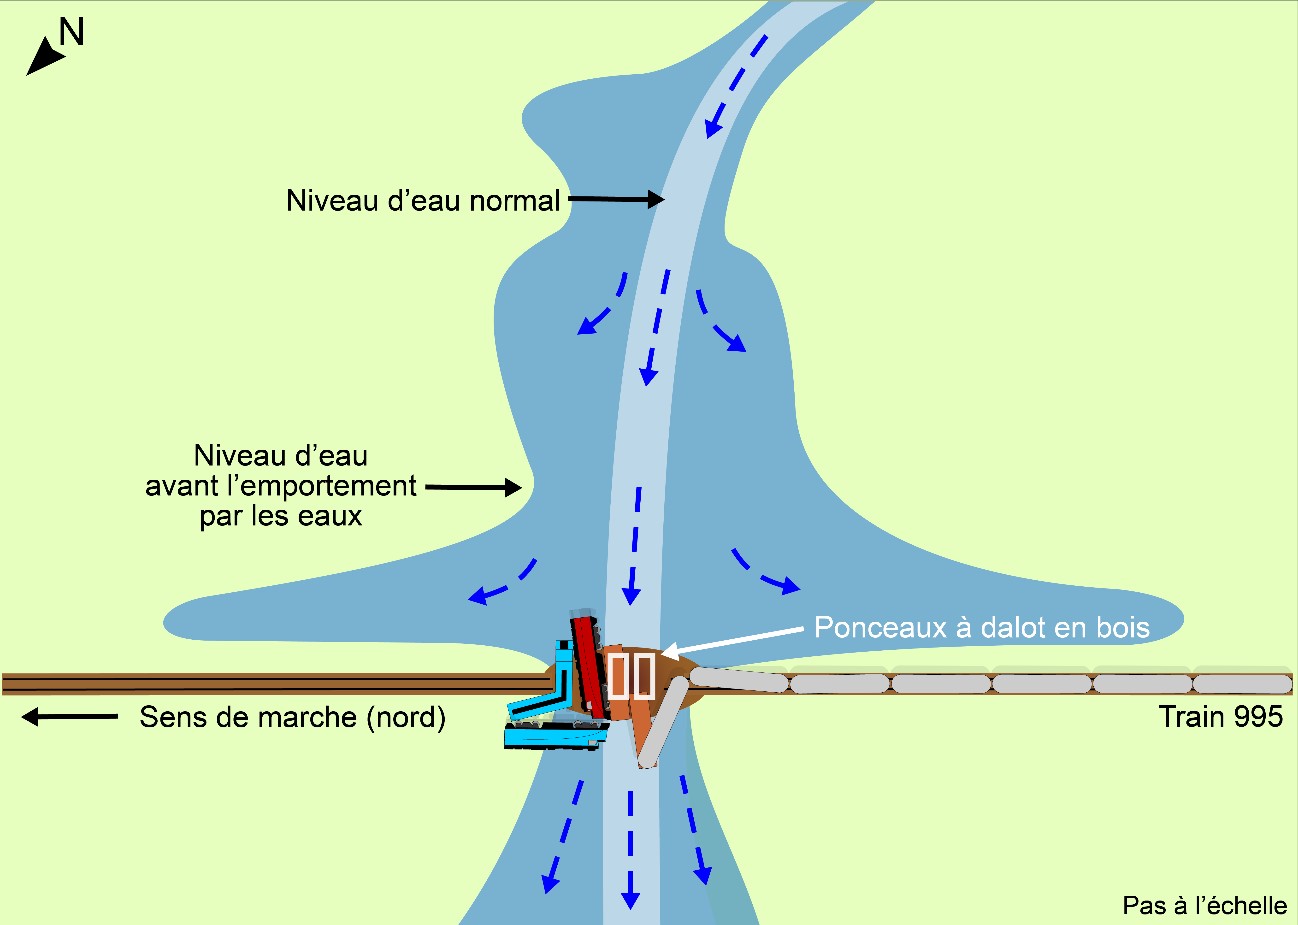 Schéma du lieu du déraillement montrant les niveaux d’eau dans des conditions normales et avant l’emportement par les eaux (Source : BST)